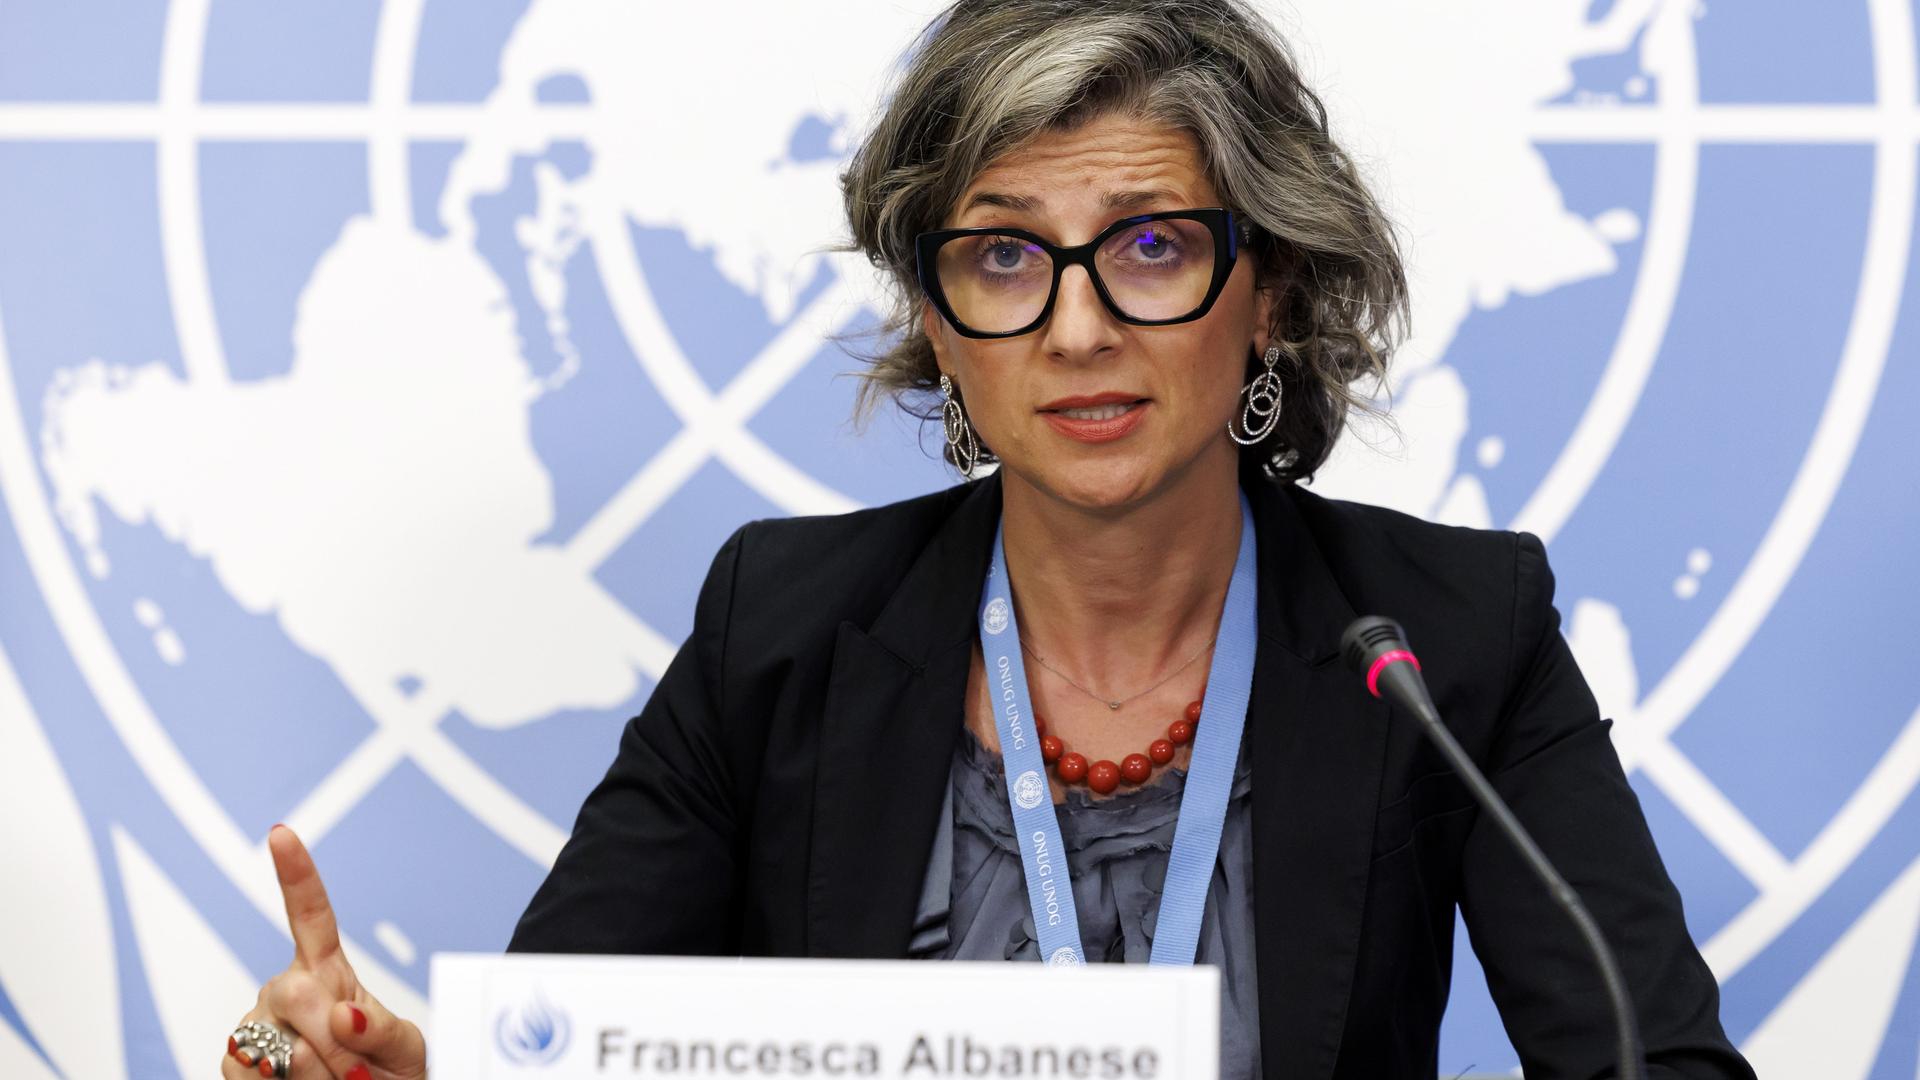 Francesca Albanese sitzt an einem Tisch, spricht in ein Mikrofon und hebt dabei den Zeigefinger der rechten Hand. Im Hintergrund ist eine Weltkarte zu sehen.